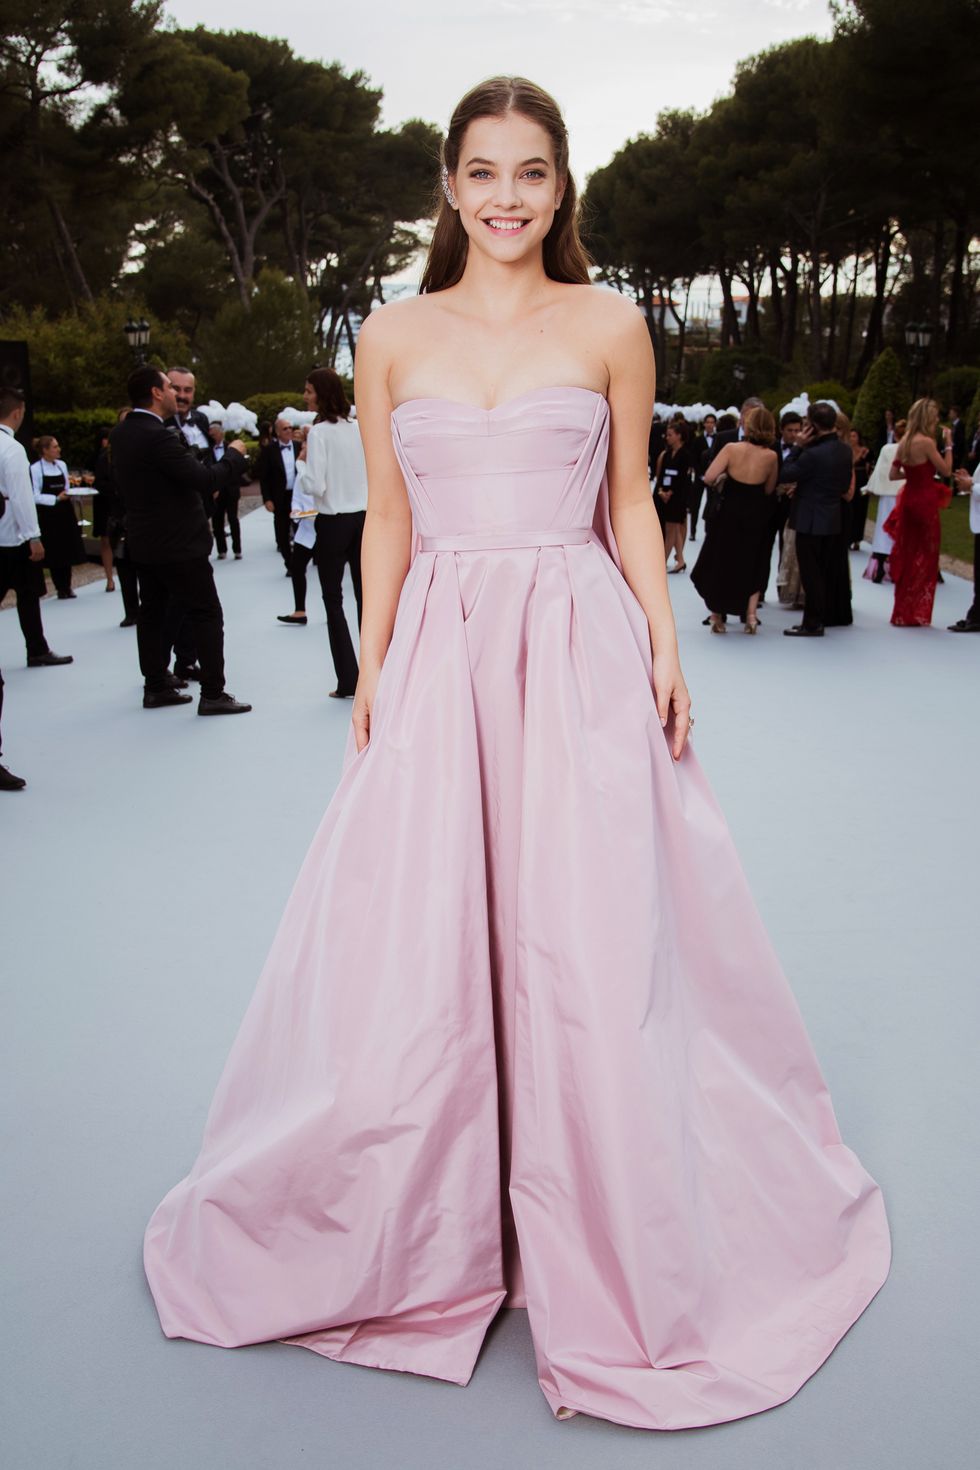 Nella lunga notte di amfAR Cannes, la charity night per la lotta all'aids, celeb, attrici e modelle si sono veramente date da fare con i look: sexy, audaci e provocanti, ecco i 17 vestiti lunghi belli&impossibili.